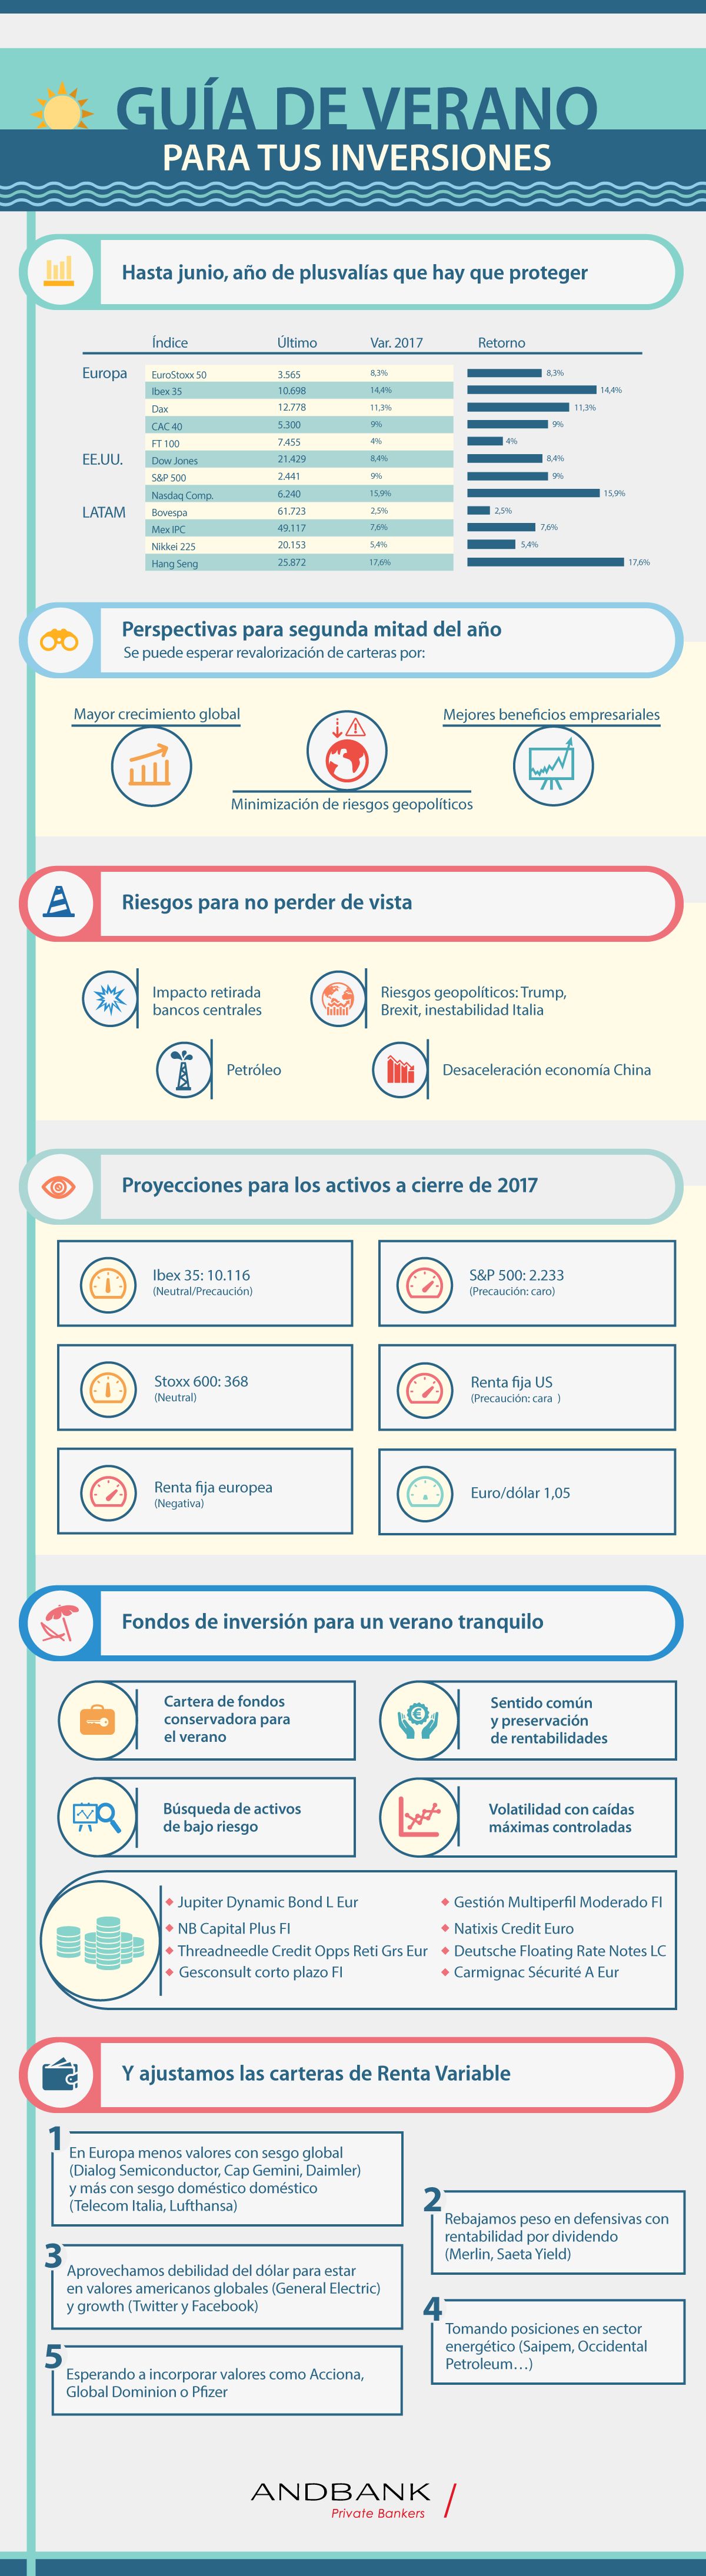 Andbank España infografia fondos de inversion